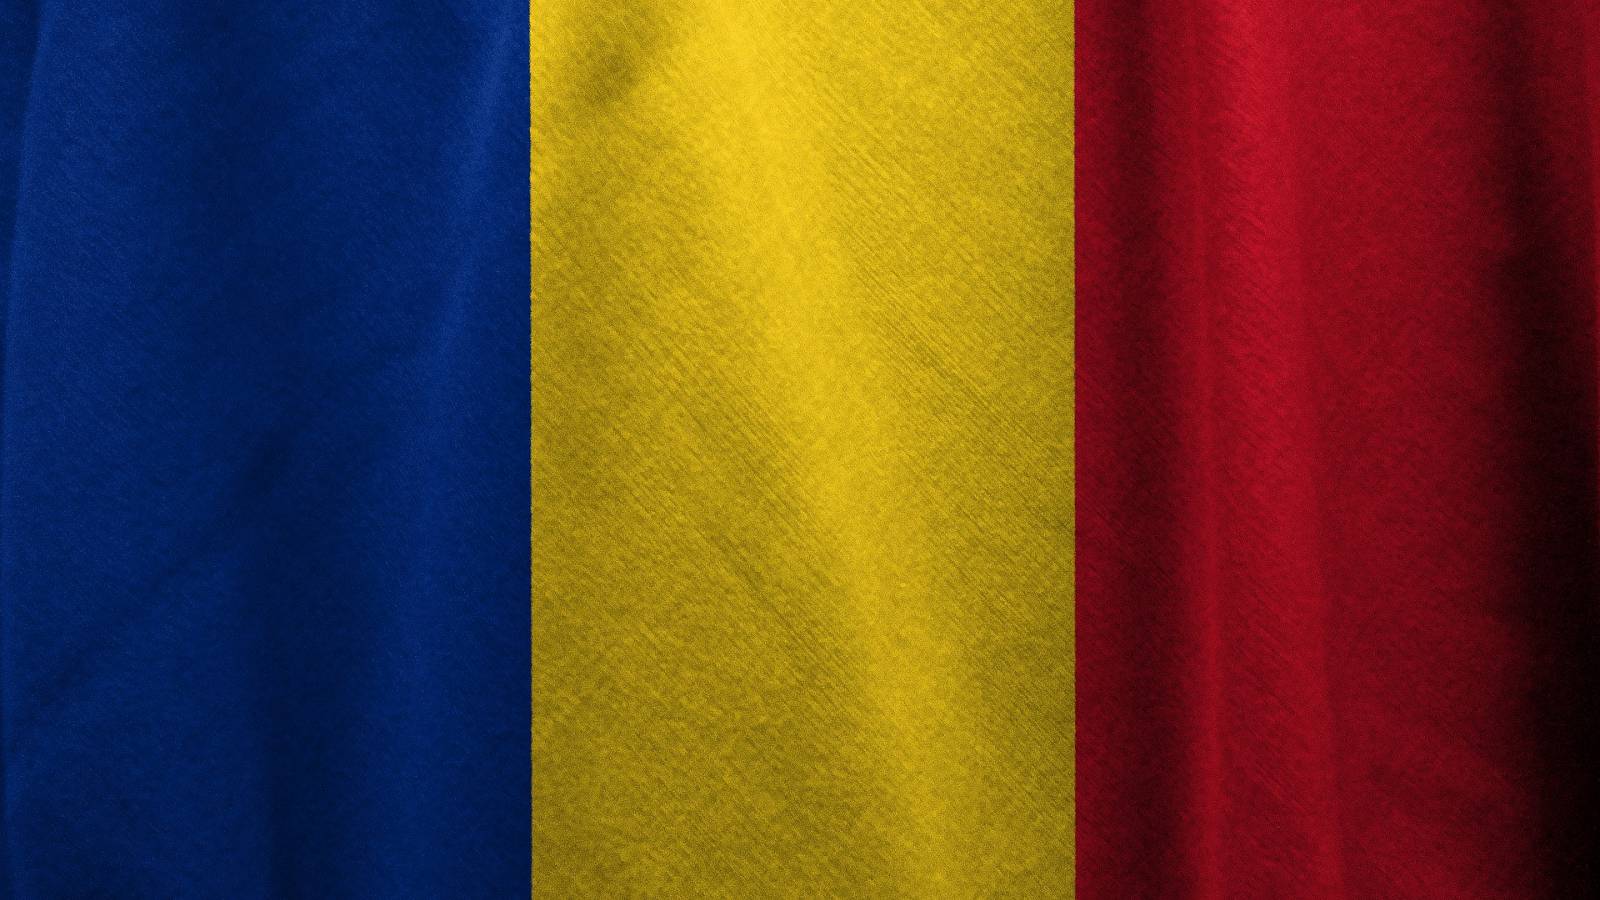 DSU Romania Noua Dezinformare Privind Criza Medicamentelor in Farmacii